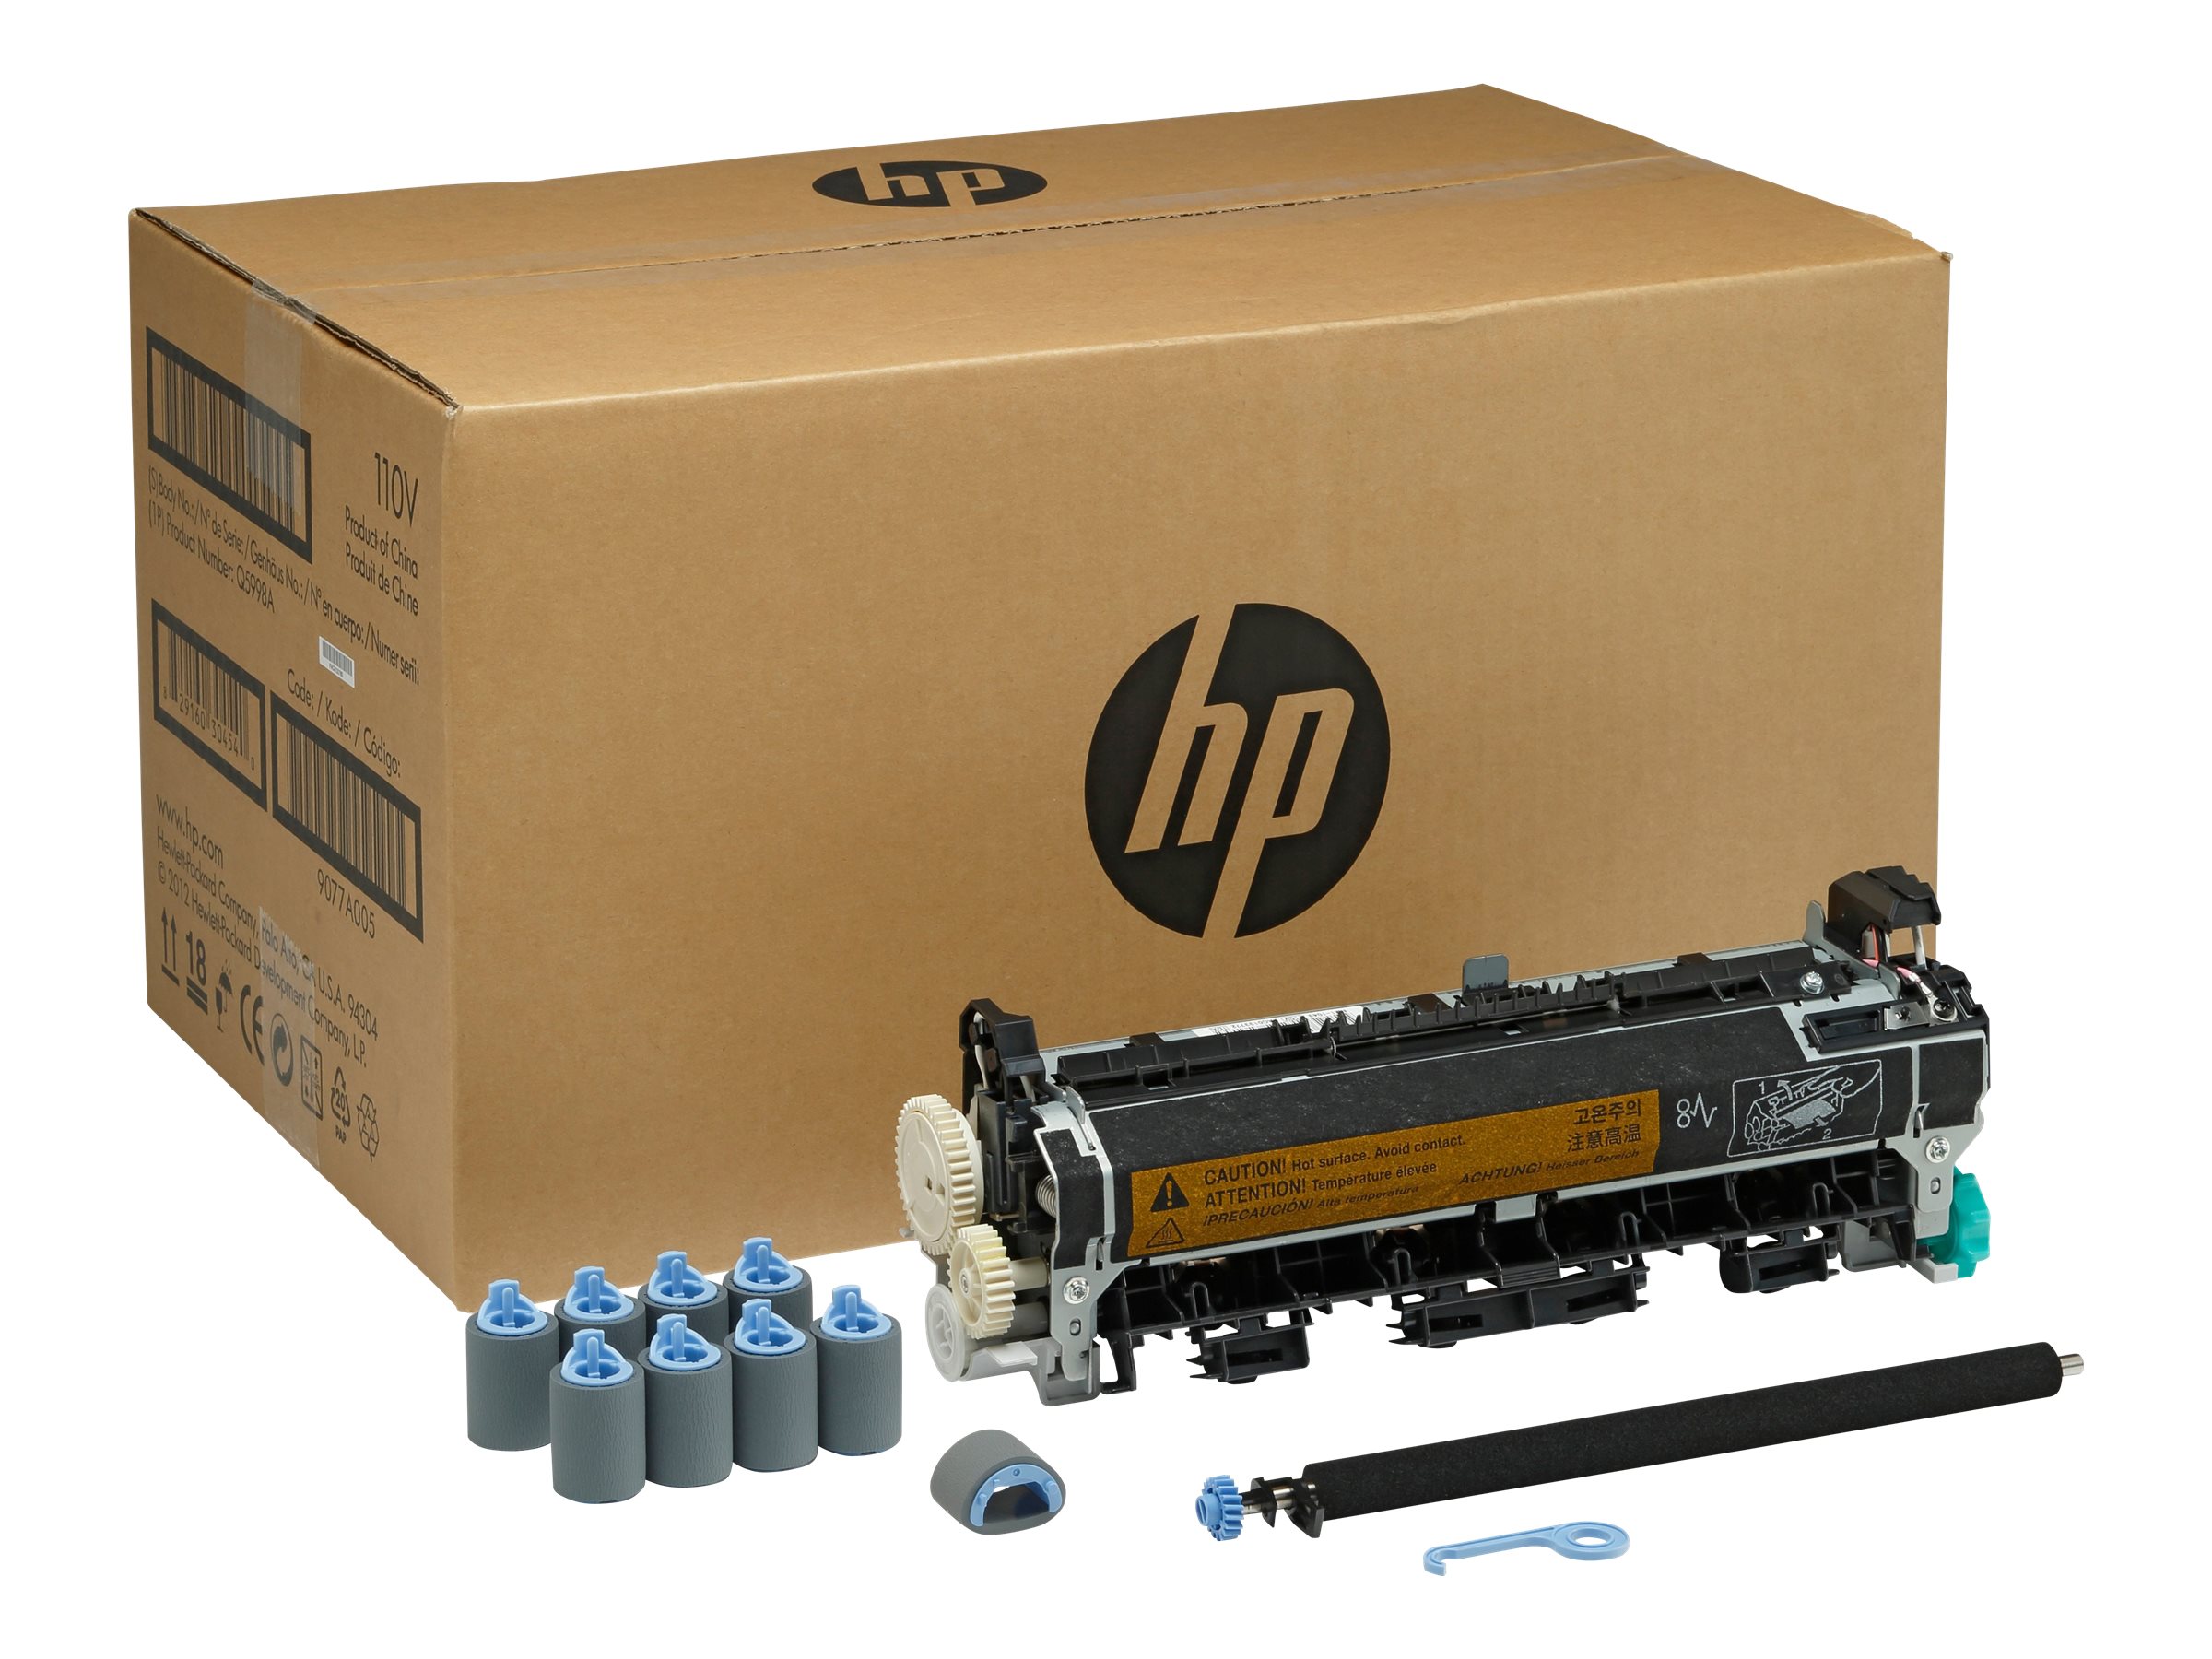 HP - (220 V) - Wartungskit - für LaserJet 4345mfp, 4345x, 4345xm, 4345xs, M4345, M4345x, M4345xm, M4345xs, M4349x